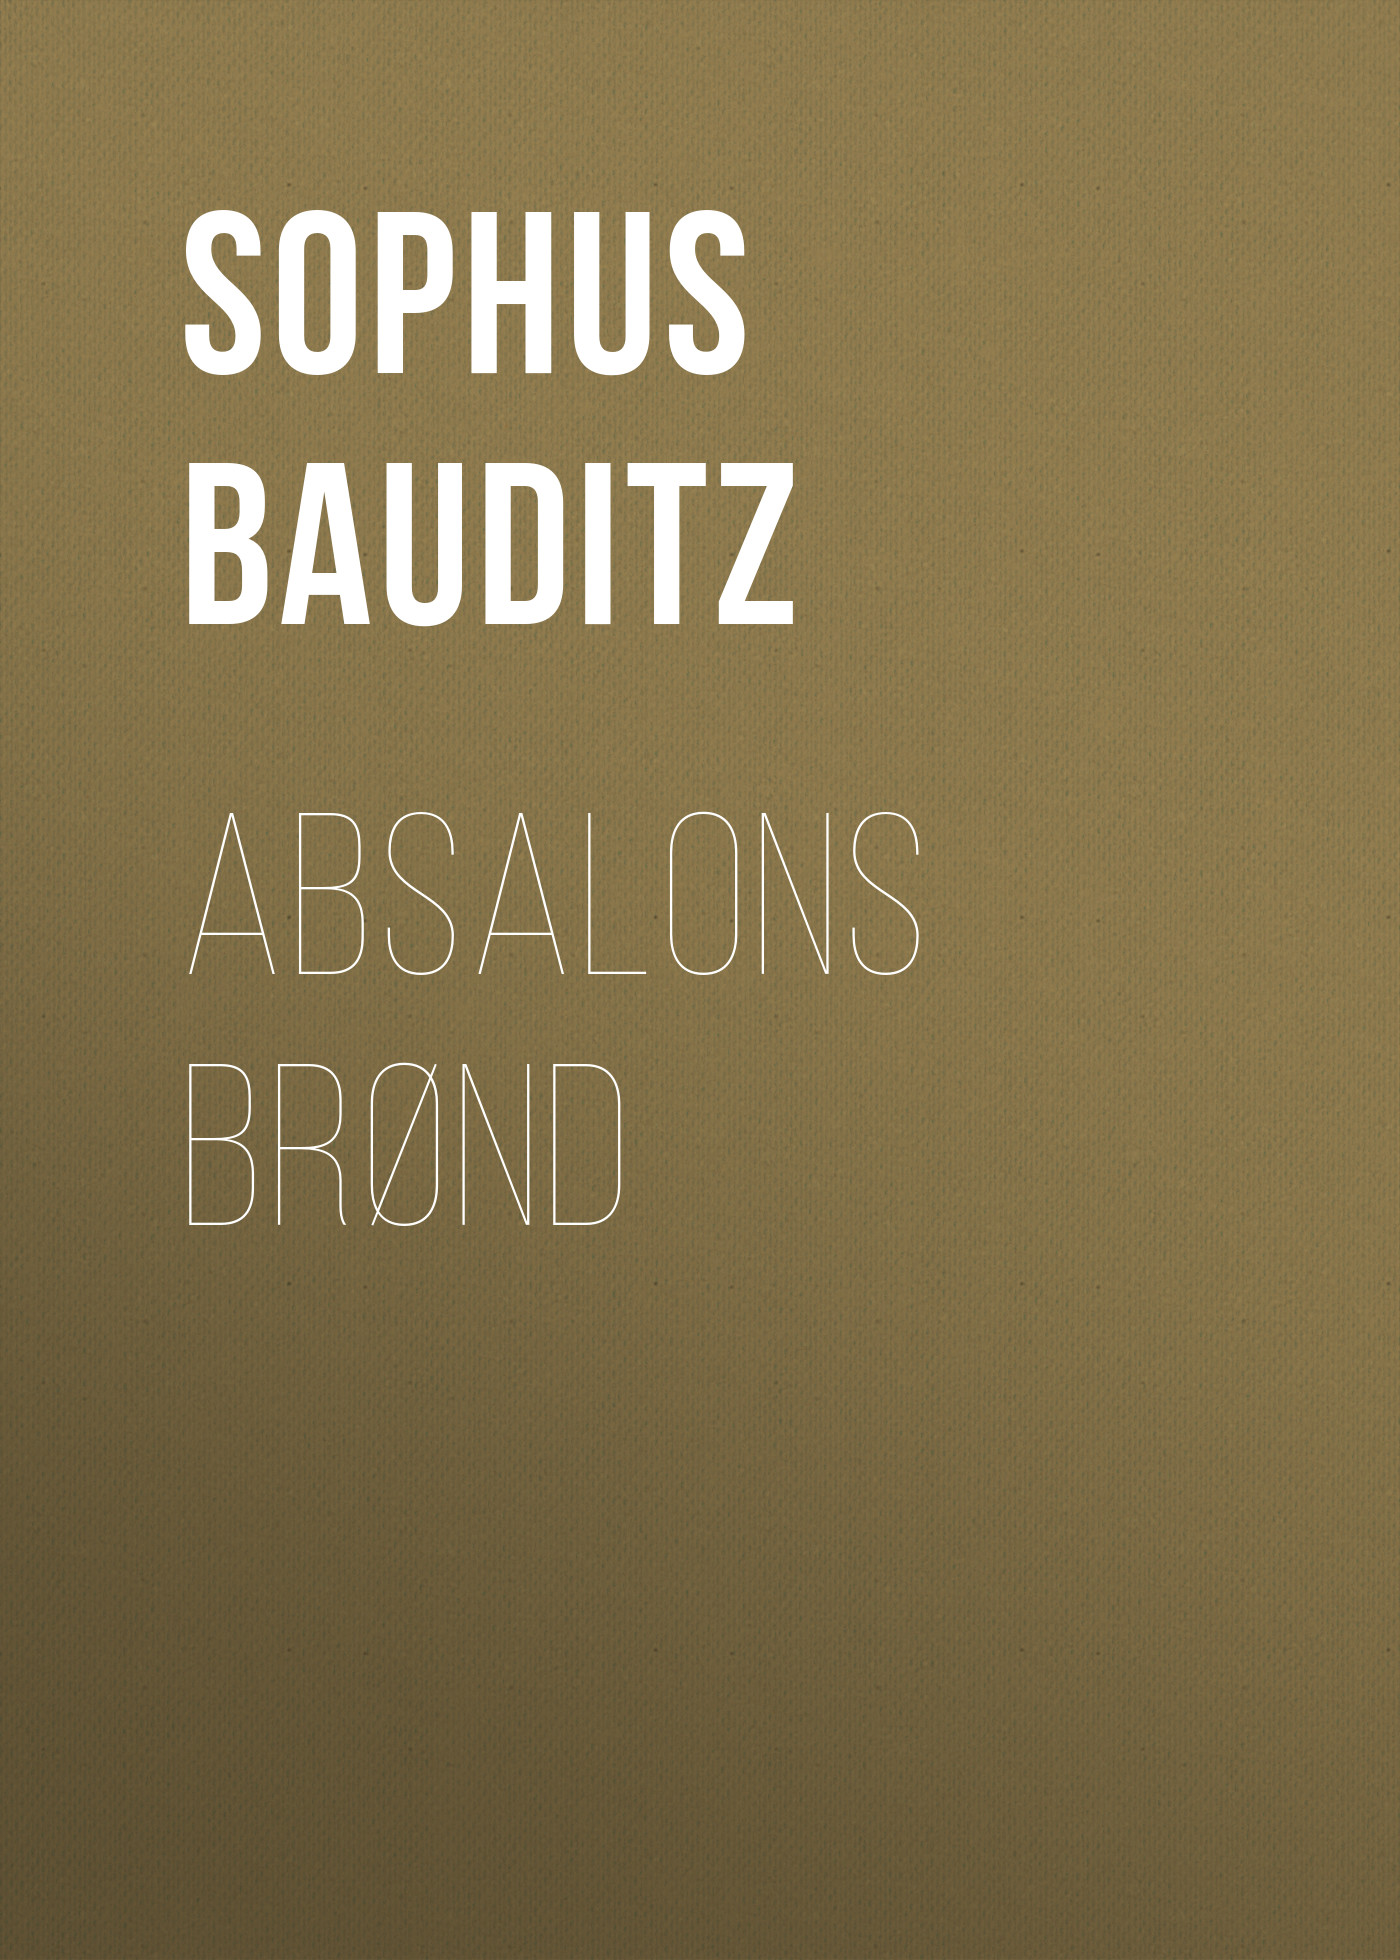 Книга Absalons Brønd из серии , созданная Sophus Bauditz, может относится к жанру Зарубежная старинная литература, Зарубежная классика. Стоимость электронной книги Absalons Brønd с идентификатором 24177556 составляет 0.90 руб.